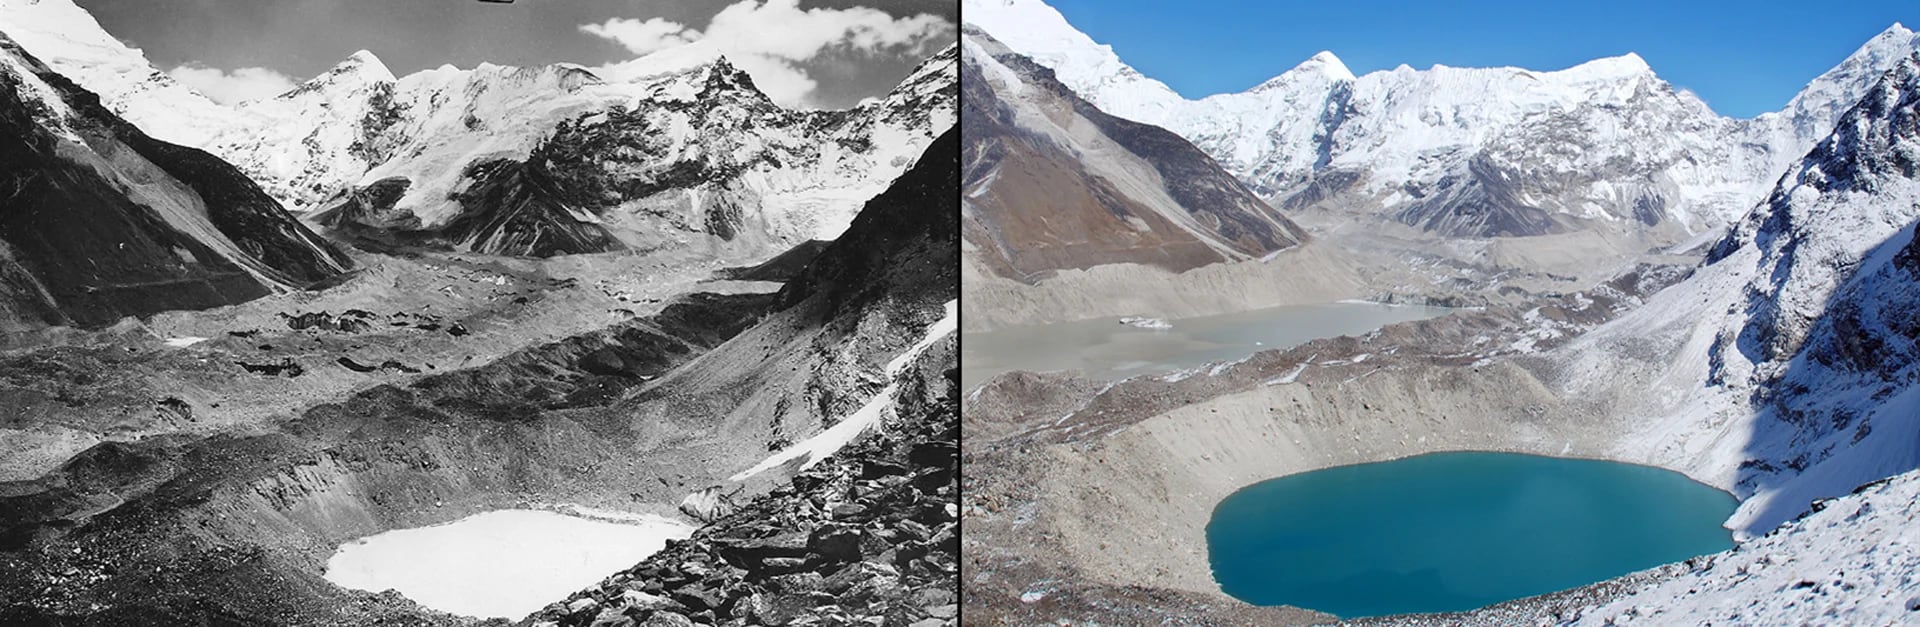 Derretimiento del Glaciar Imja, Himalaya: otoño de 1956 al 18 de octubre de 2007